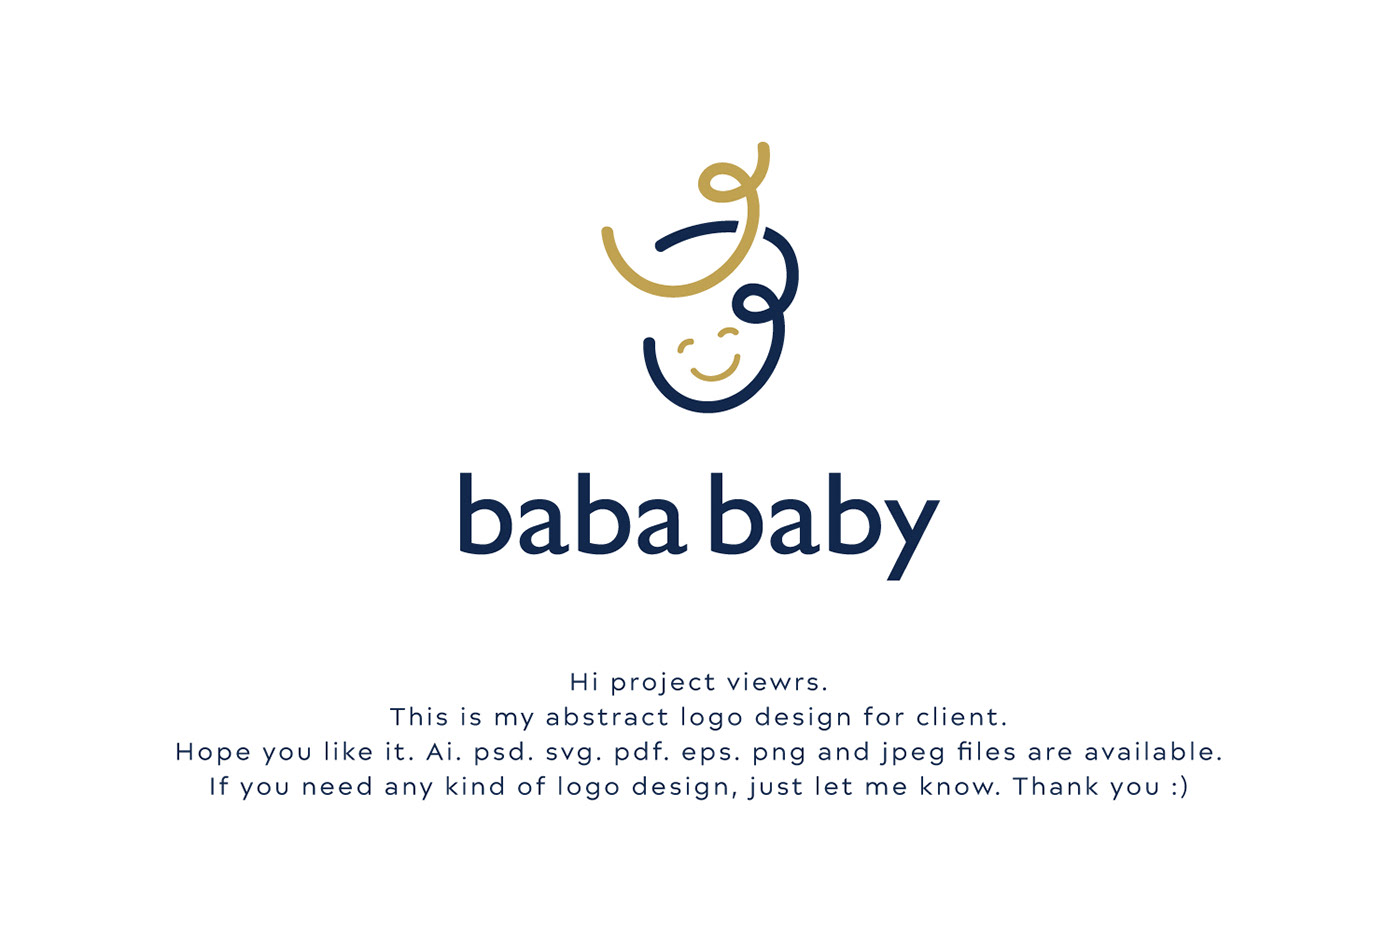 Abstract baba baby logo design, vector logo design